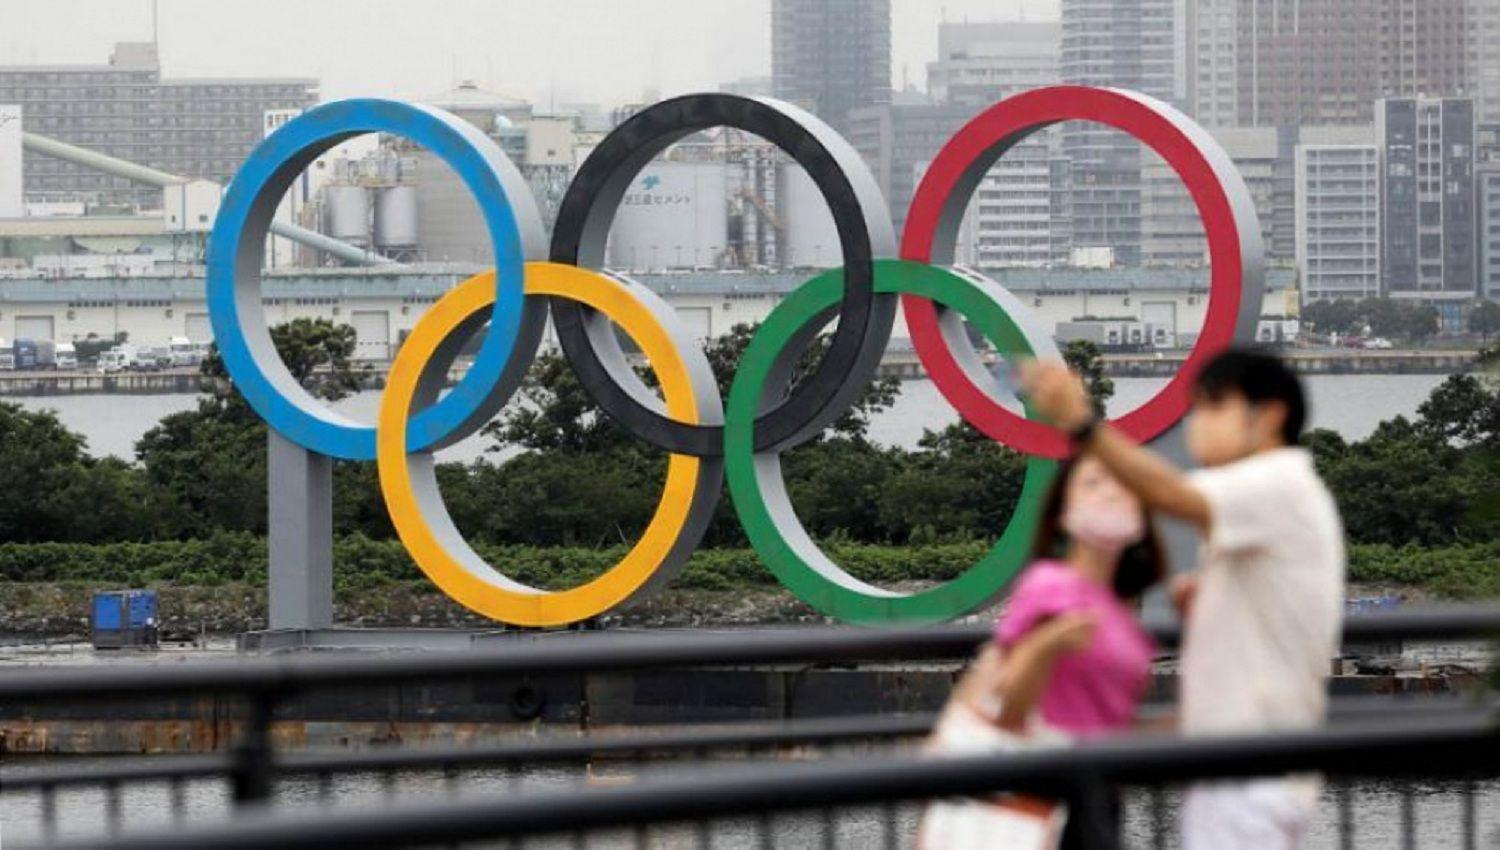 Japoacuten prohibiriacutea totalmente el puacuteblico en los Juegos Oliacutempicos